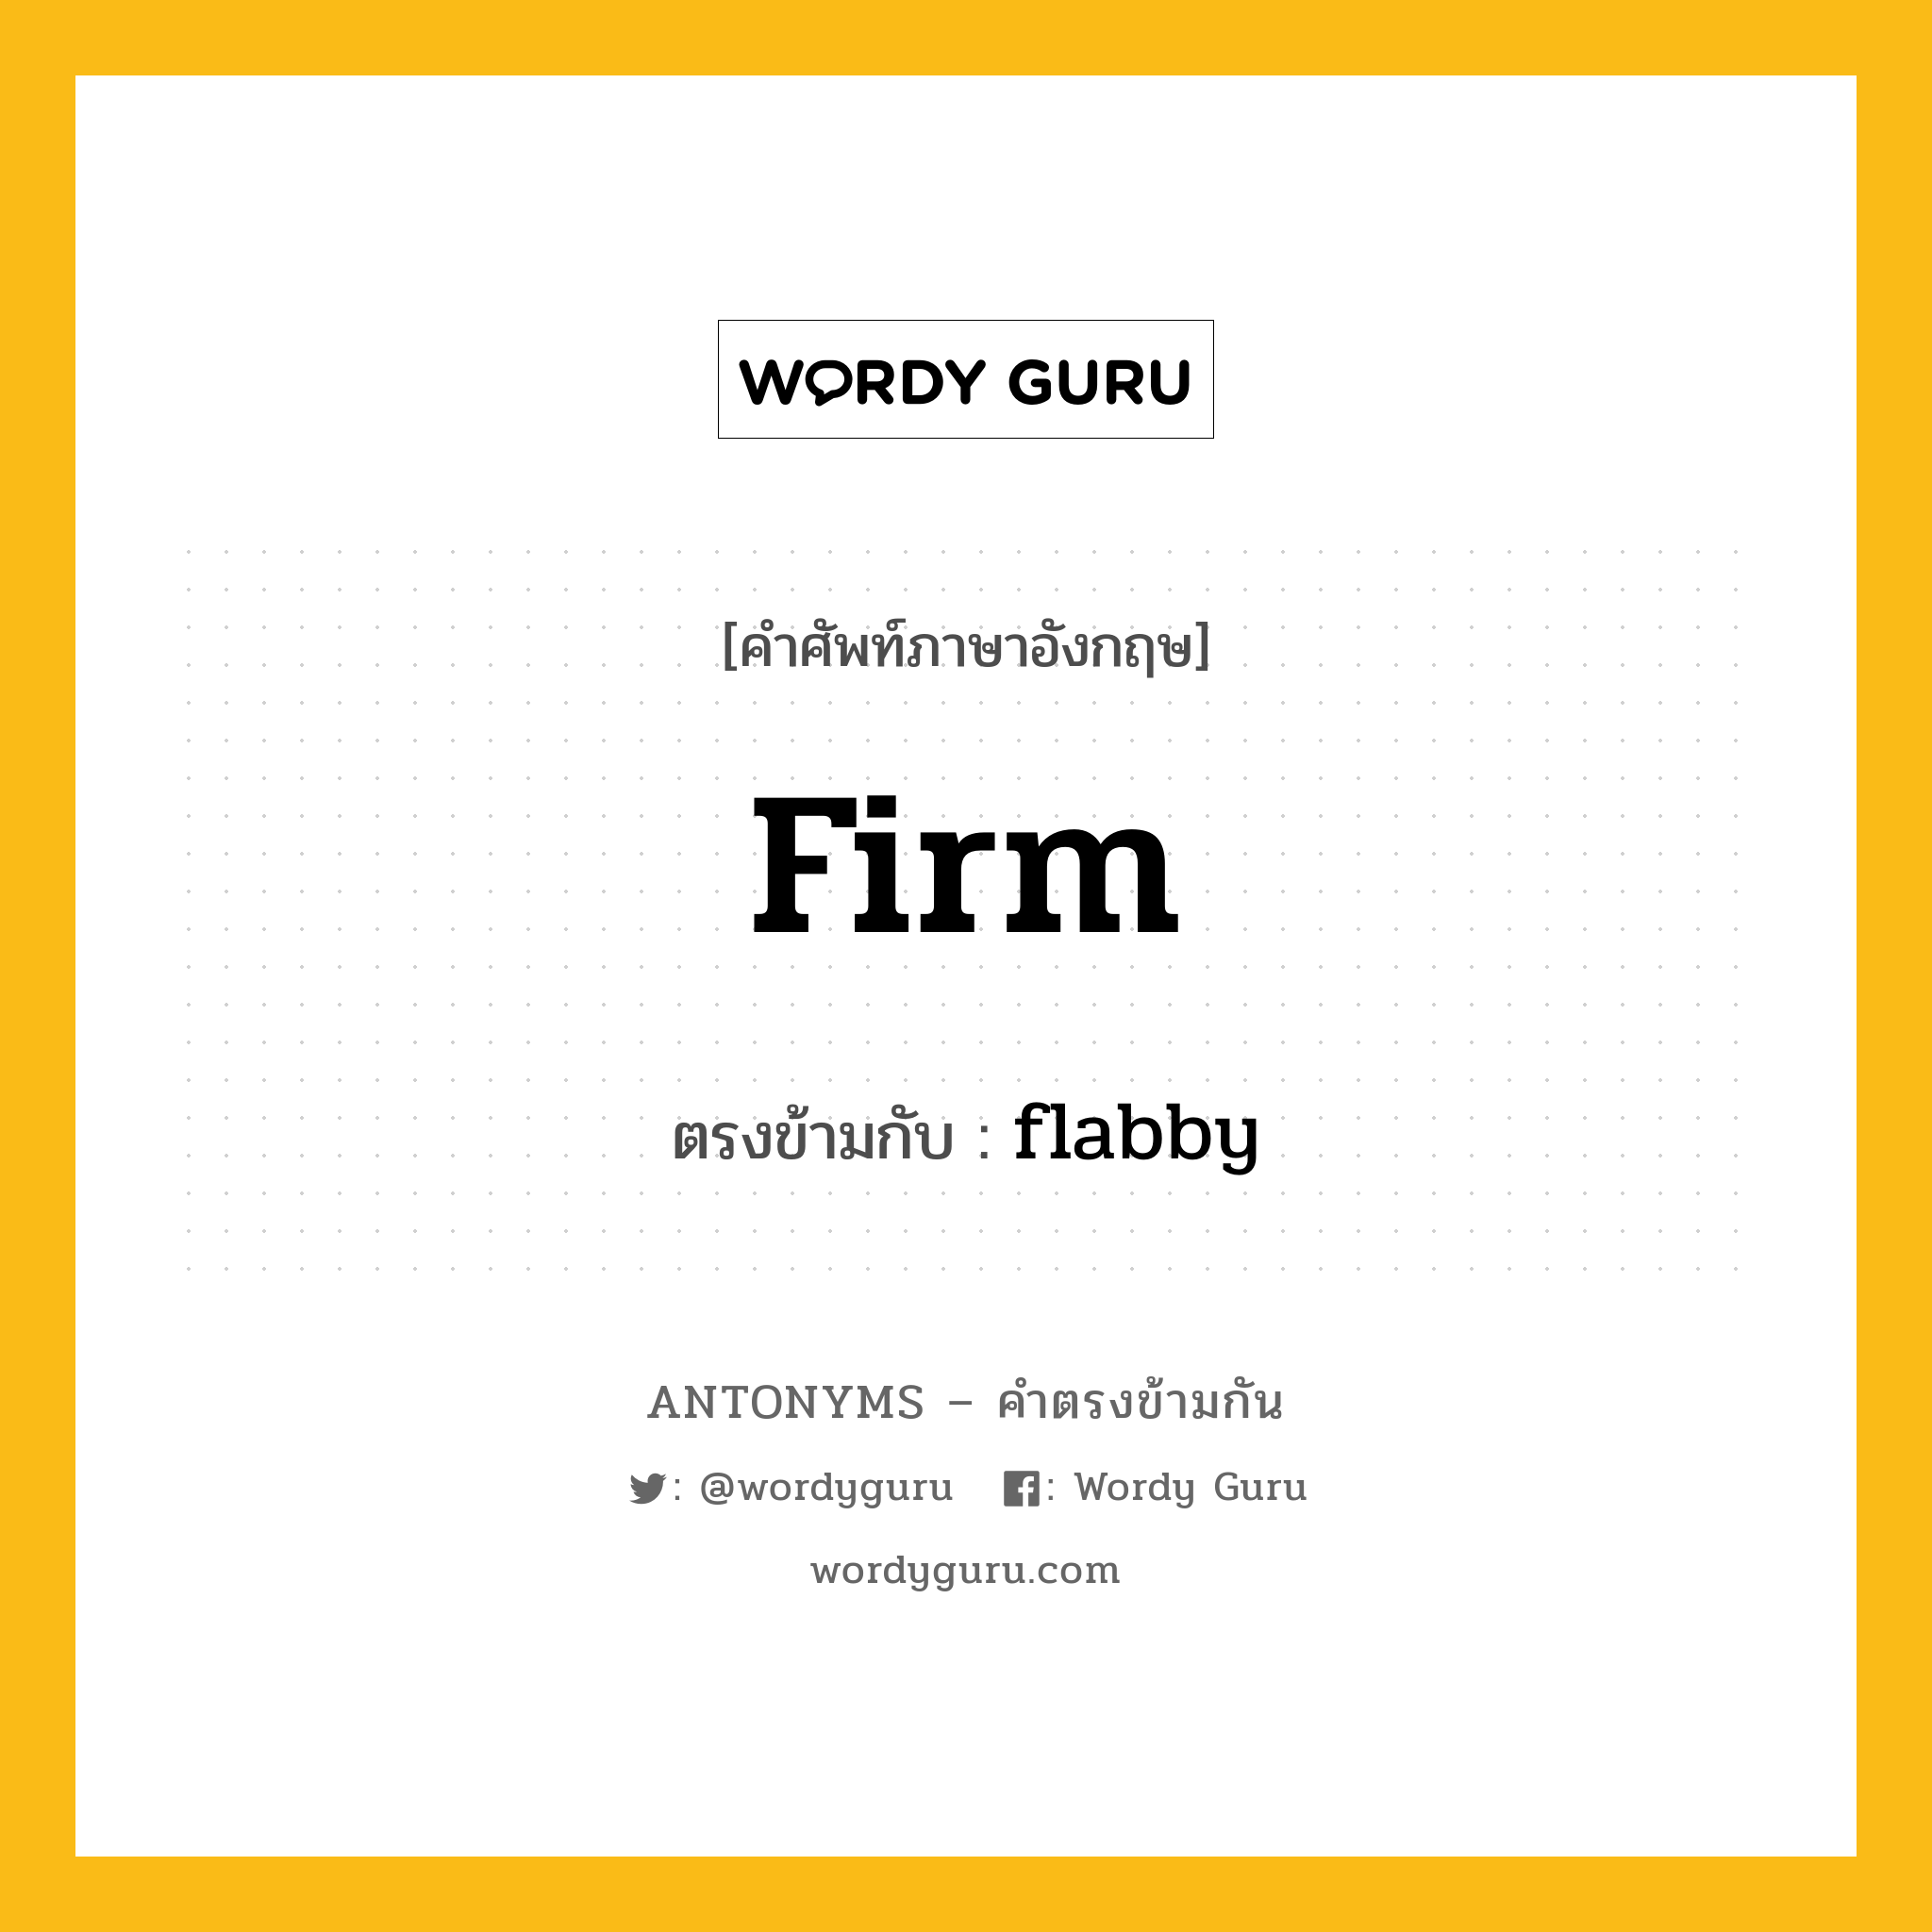 firm เป็นคำตรงข้ามกับคำไหนบ้าง?, คำศัพท์ภาษาอังกฤษ firm ตรงข้ามกับ flabby หมวด flabby